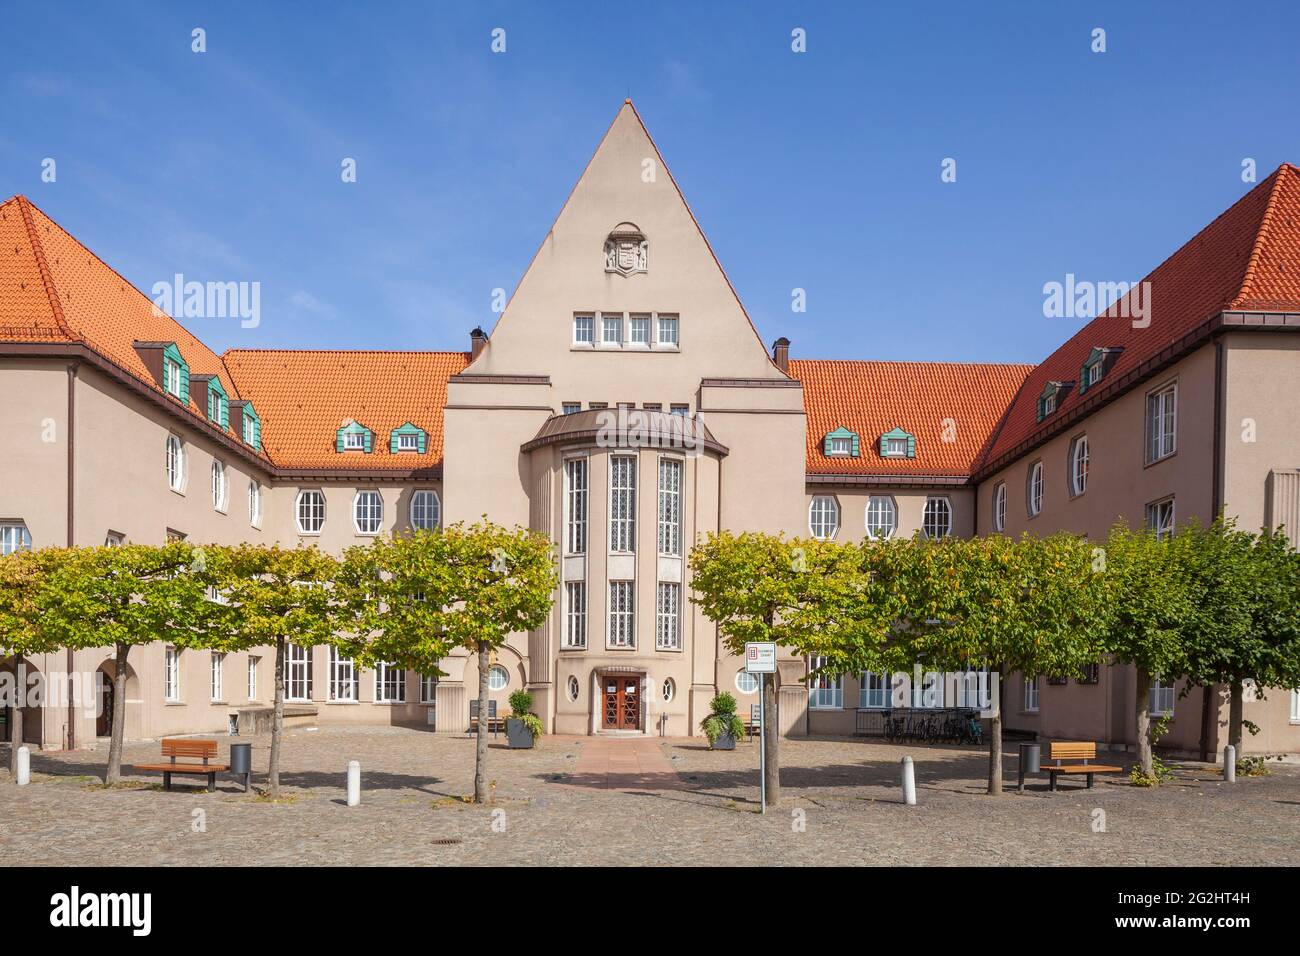 Hôtel de ville, Art nouveau, Delmenhorst, Basse-Saxe, Allemagne, Europe Banque D'Images